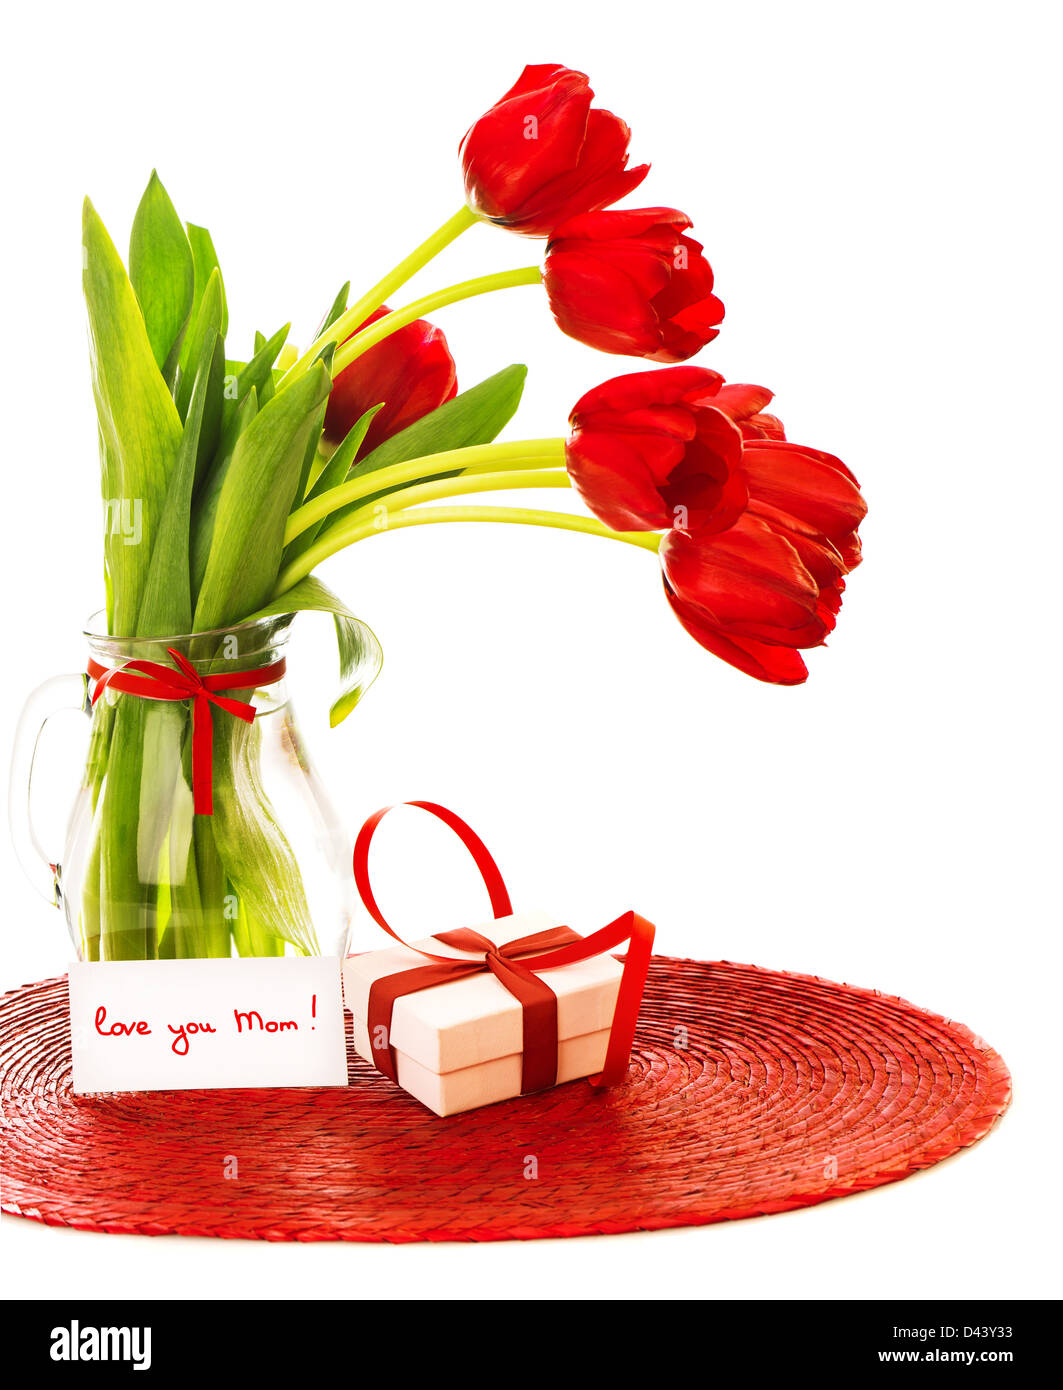 Imagen de bello Ramo de tulipanes rojos en un jarrón, blanco caja de regalo  con cinta, tarjeta de felicitación, te amo mamá, feliz día de las madres  Fotografía de stock - Alamy